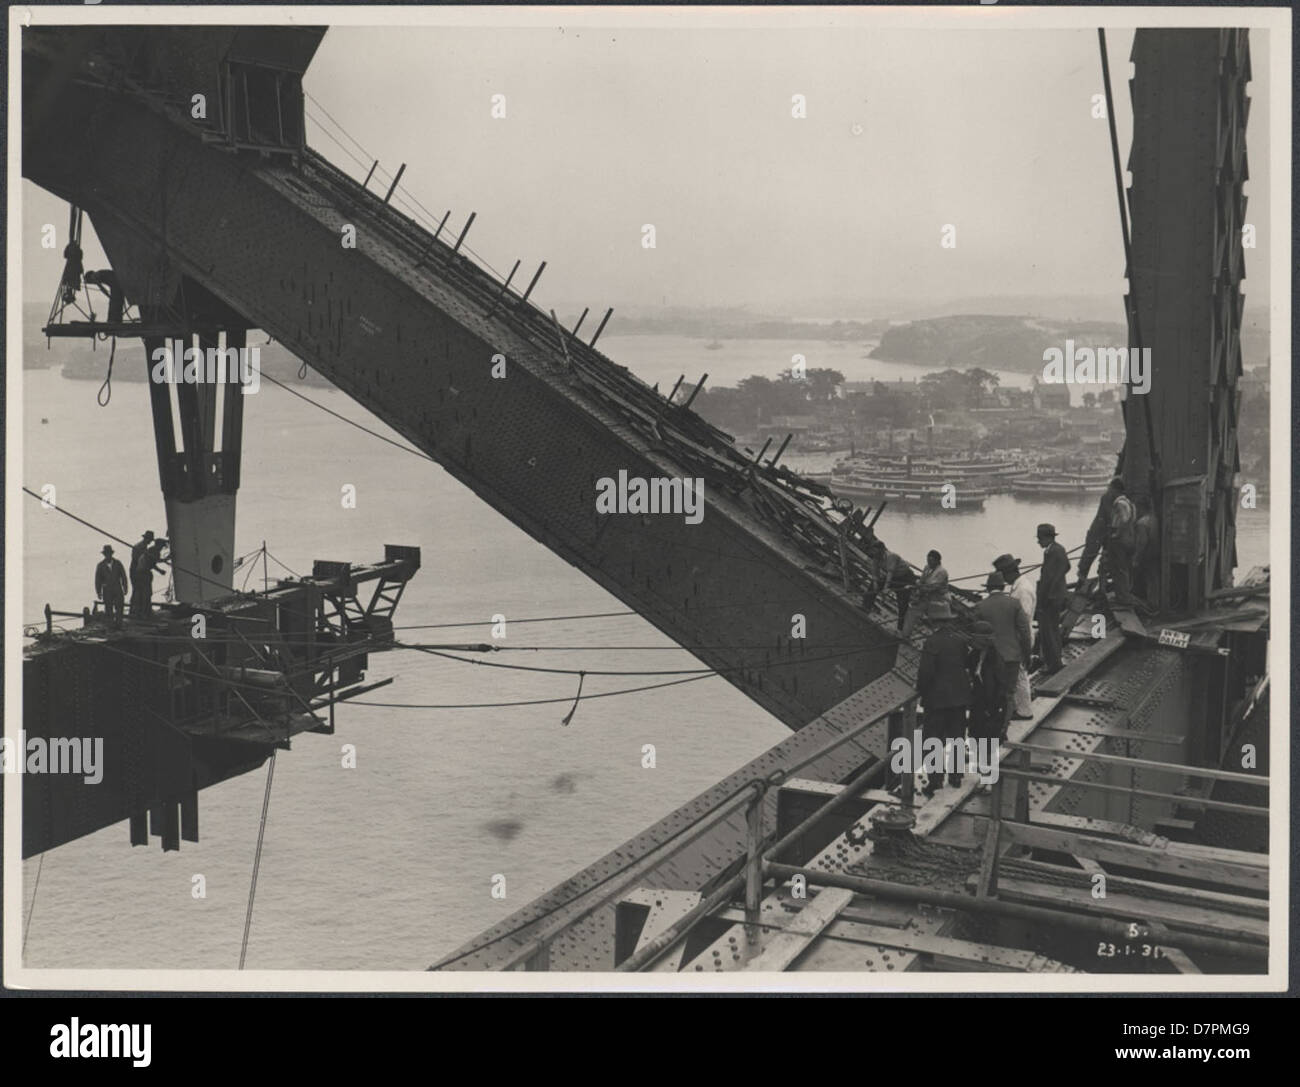 87/1353-90 impression photographique, vue de la construction de la Sydney Harbour Bridge, de l'argent / gélatine / papier, photographie de la Nouvelle Galles du sud Ministère des travaux publics, Sydney, Australie, janvier, 1931 Banque D'Images